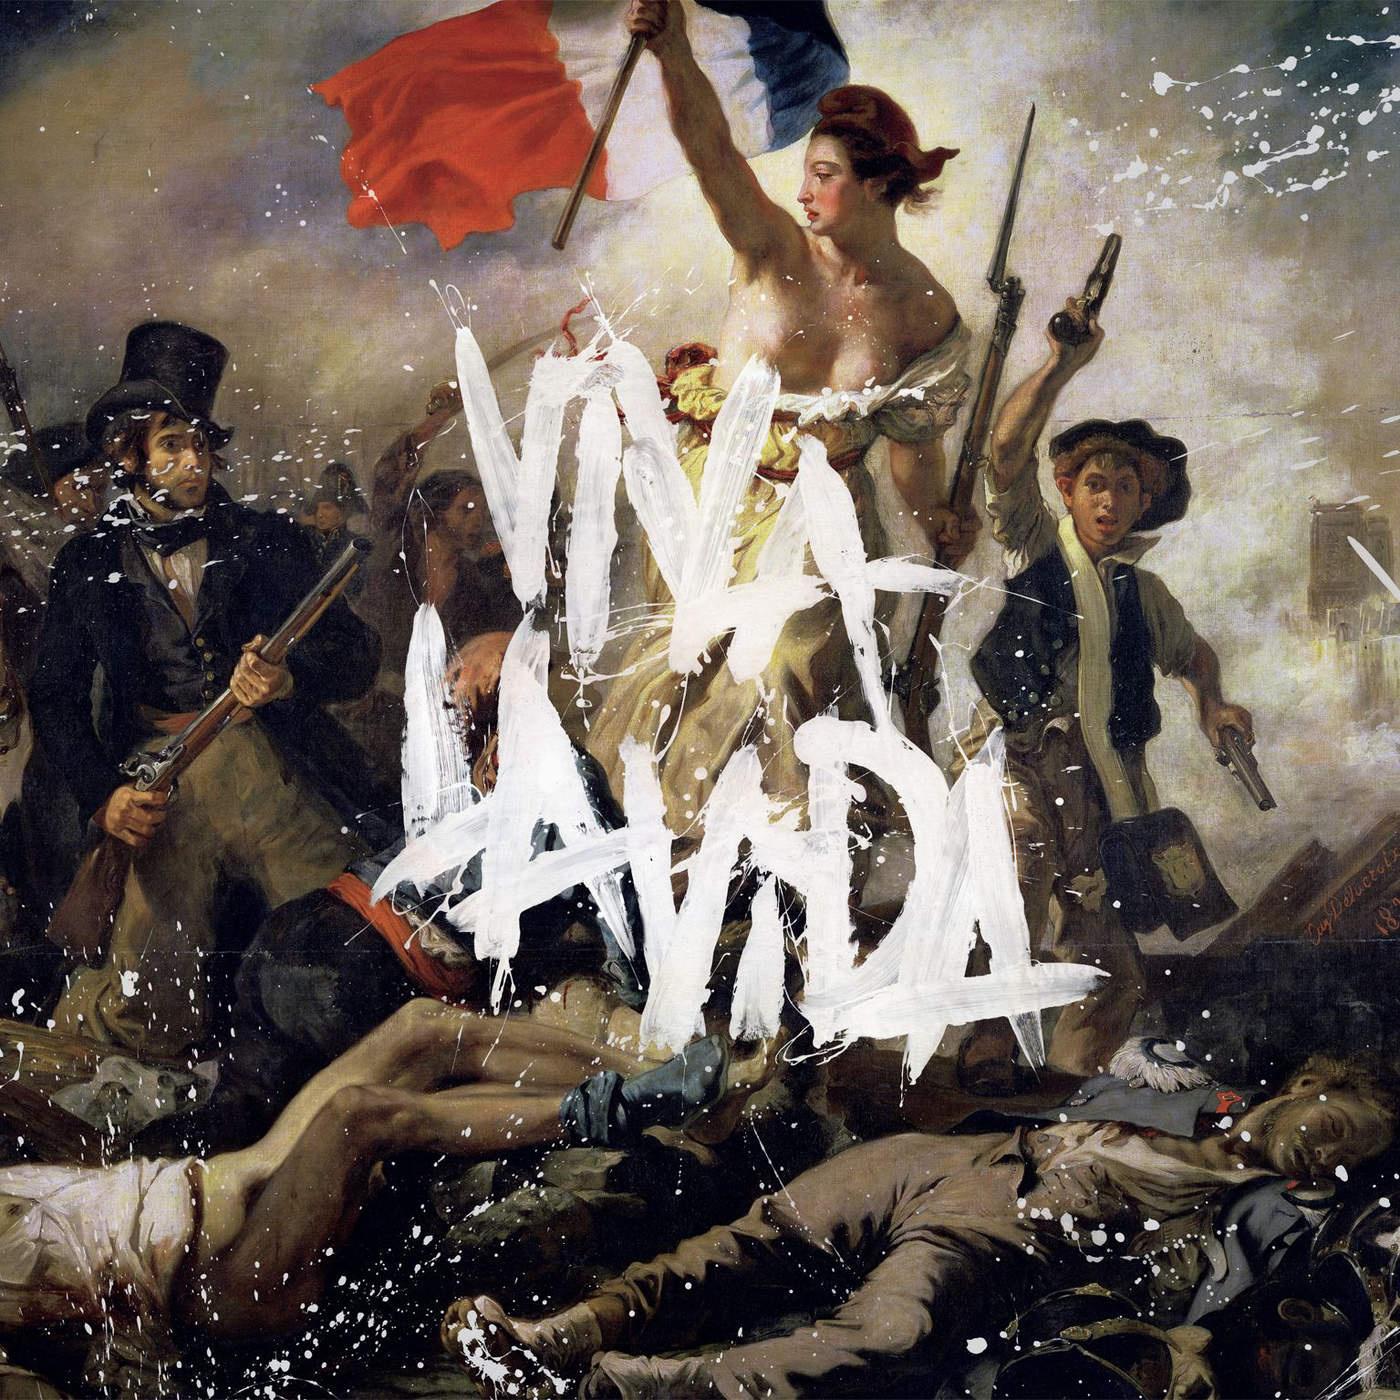 Viva La Vida歌词 歌手Coldplay-专辑Viva La Vida or Death and All His Friends-单曲《Viva La Vida》LRC歌词下载